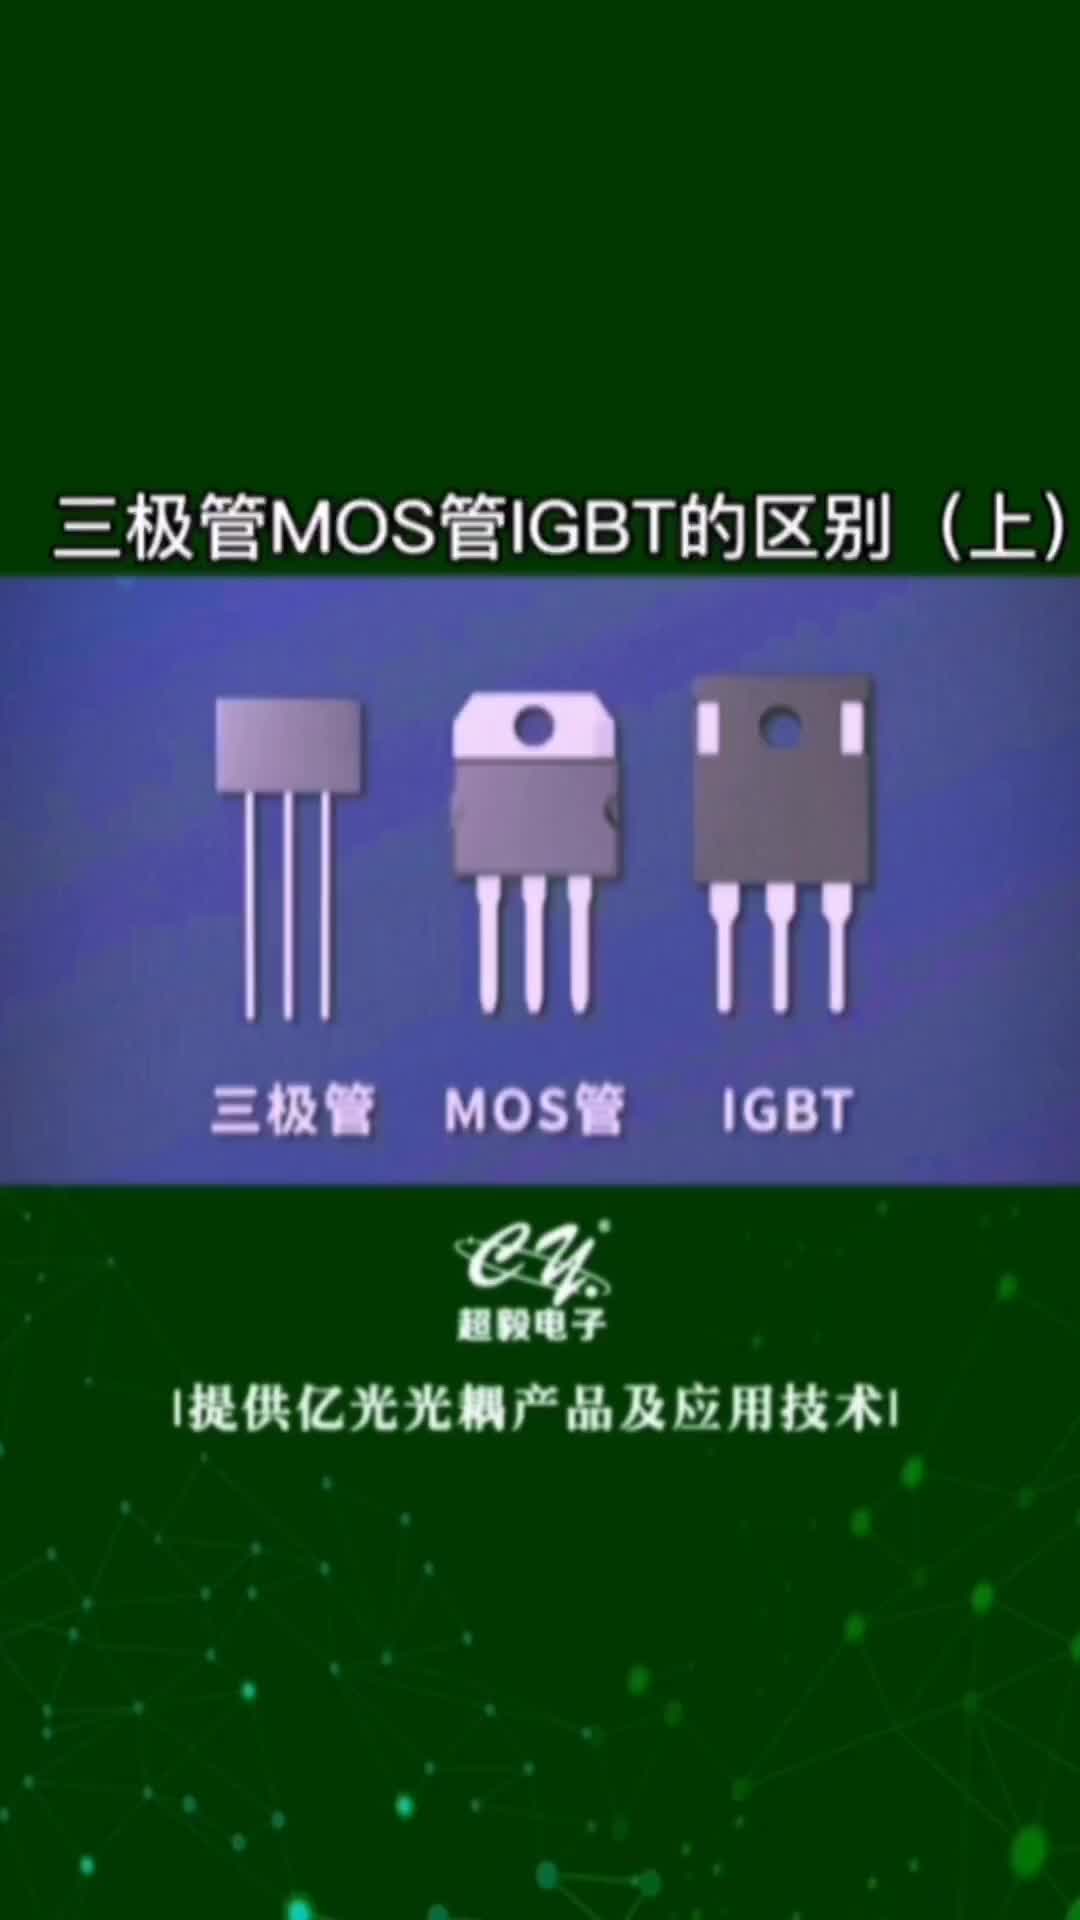 00041 #三极管 #MOS管 和#IGBT 的区别#国产芯片替换避坑指南 